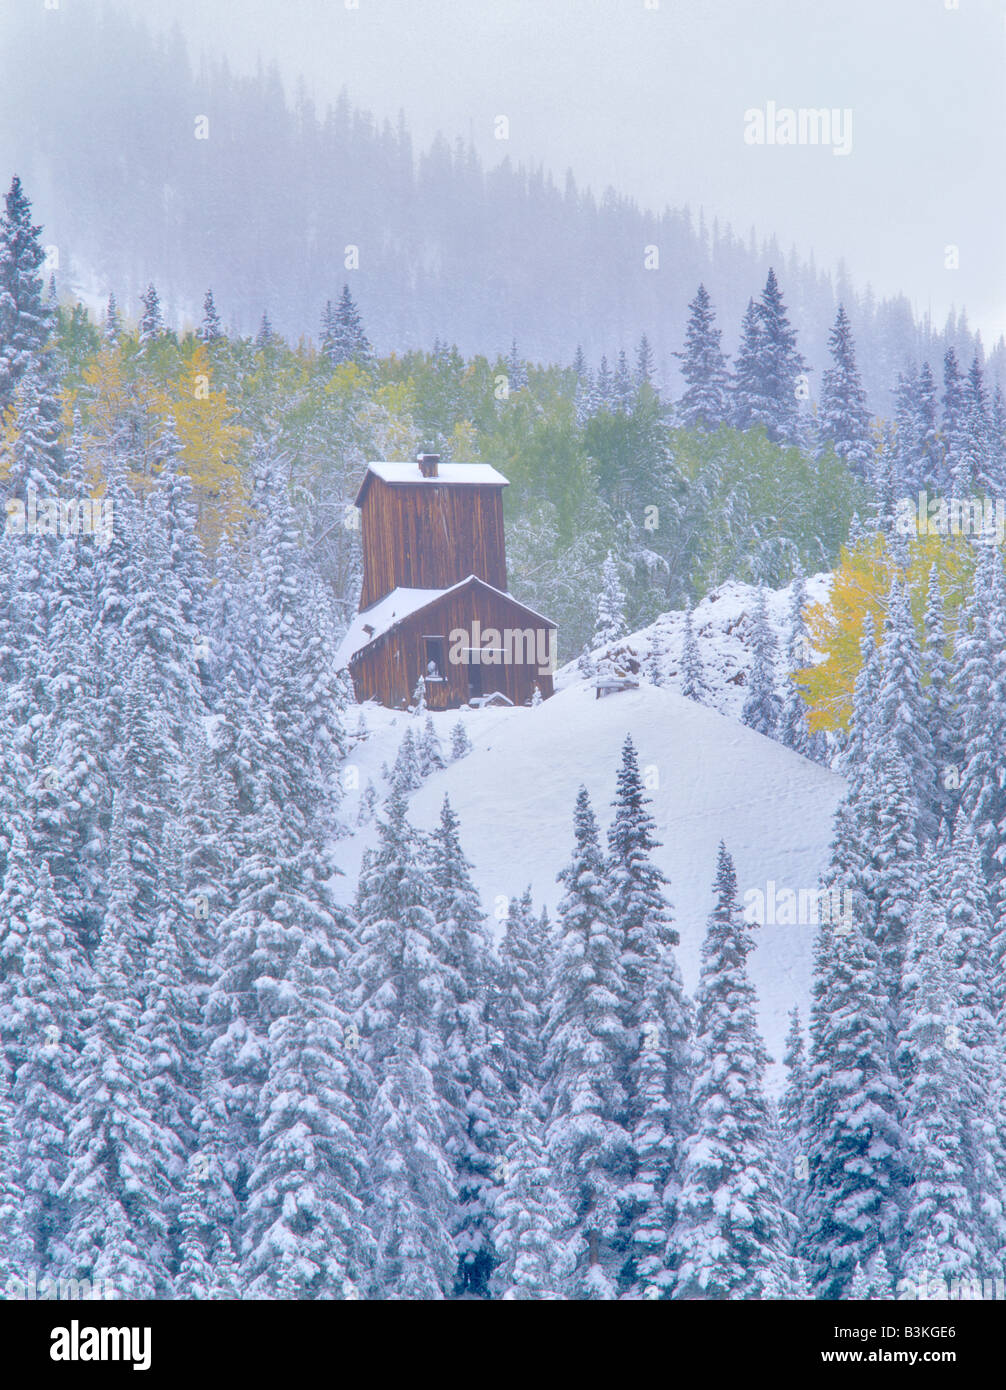 Struttura di data mining con nuova nevicata caduta e colorato Uncompahgre aspens Foresta Nazionale di Colorado Foto Stock